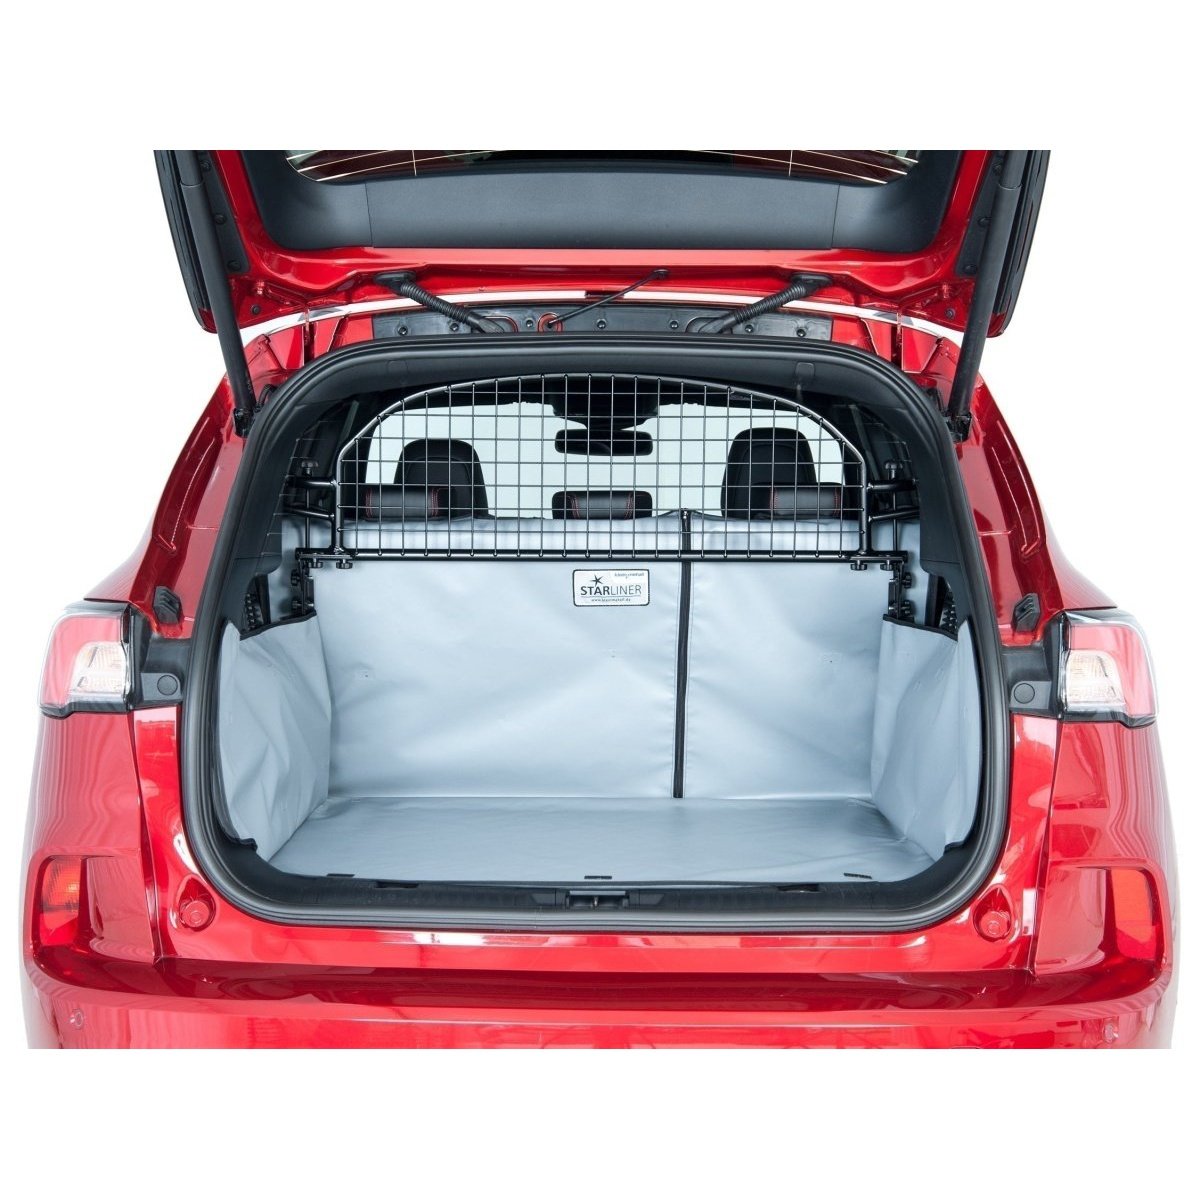 Kofferraumwanne für Peugeot 207 - Auto Ausstattung Shop